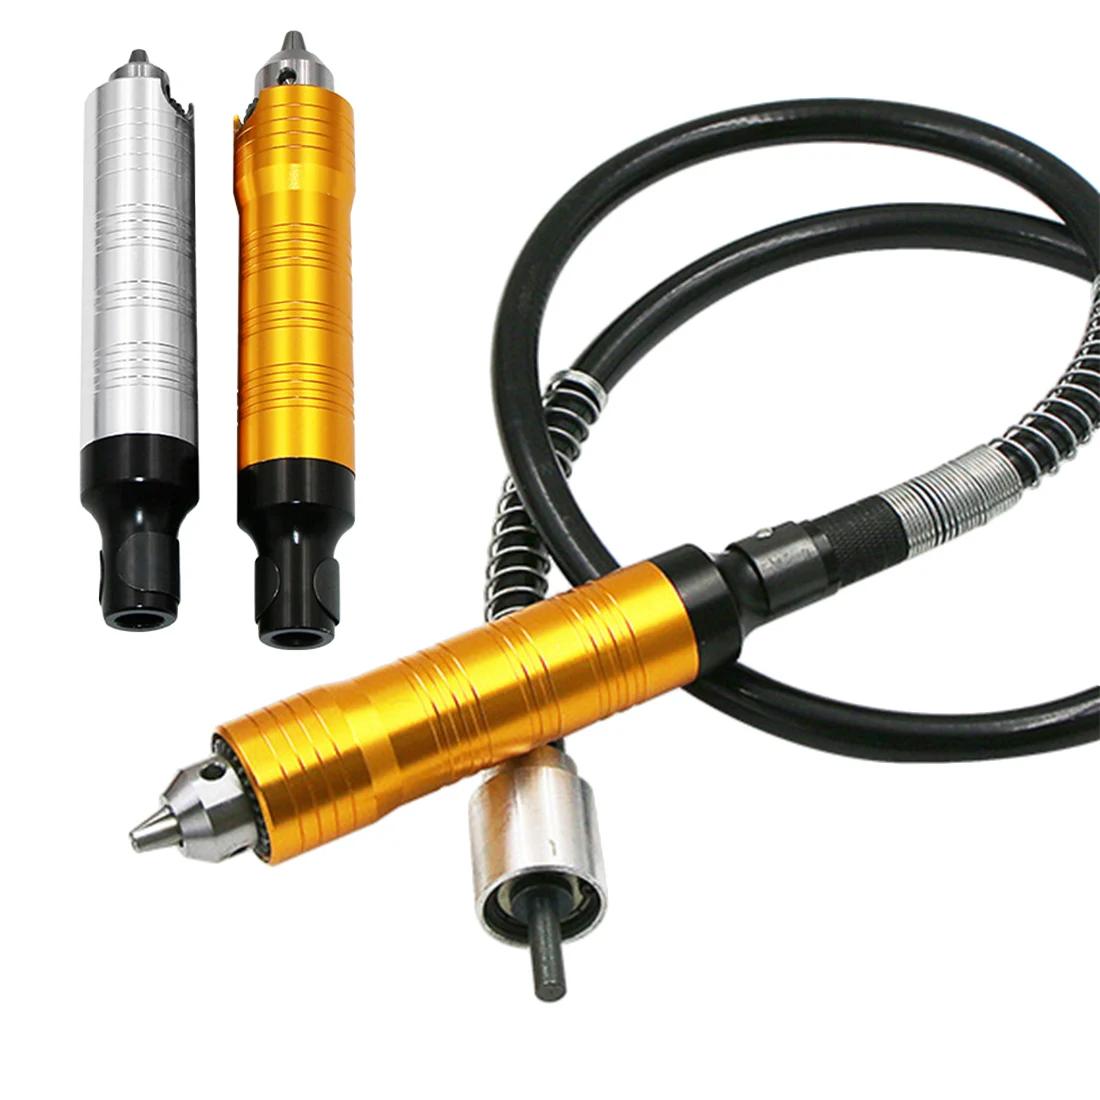 Вращающийся шлифовальный инструмент гибкий вал 0,3-6 мм/0,3-4 мм сверлильный патрон для вращающегося инструмента Dremel Аксессуары для электроинструмента